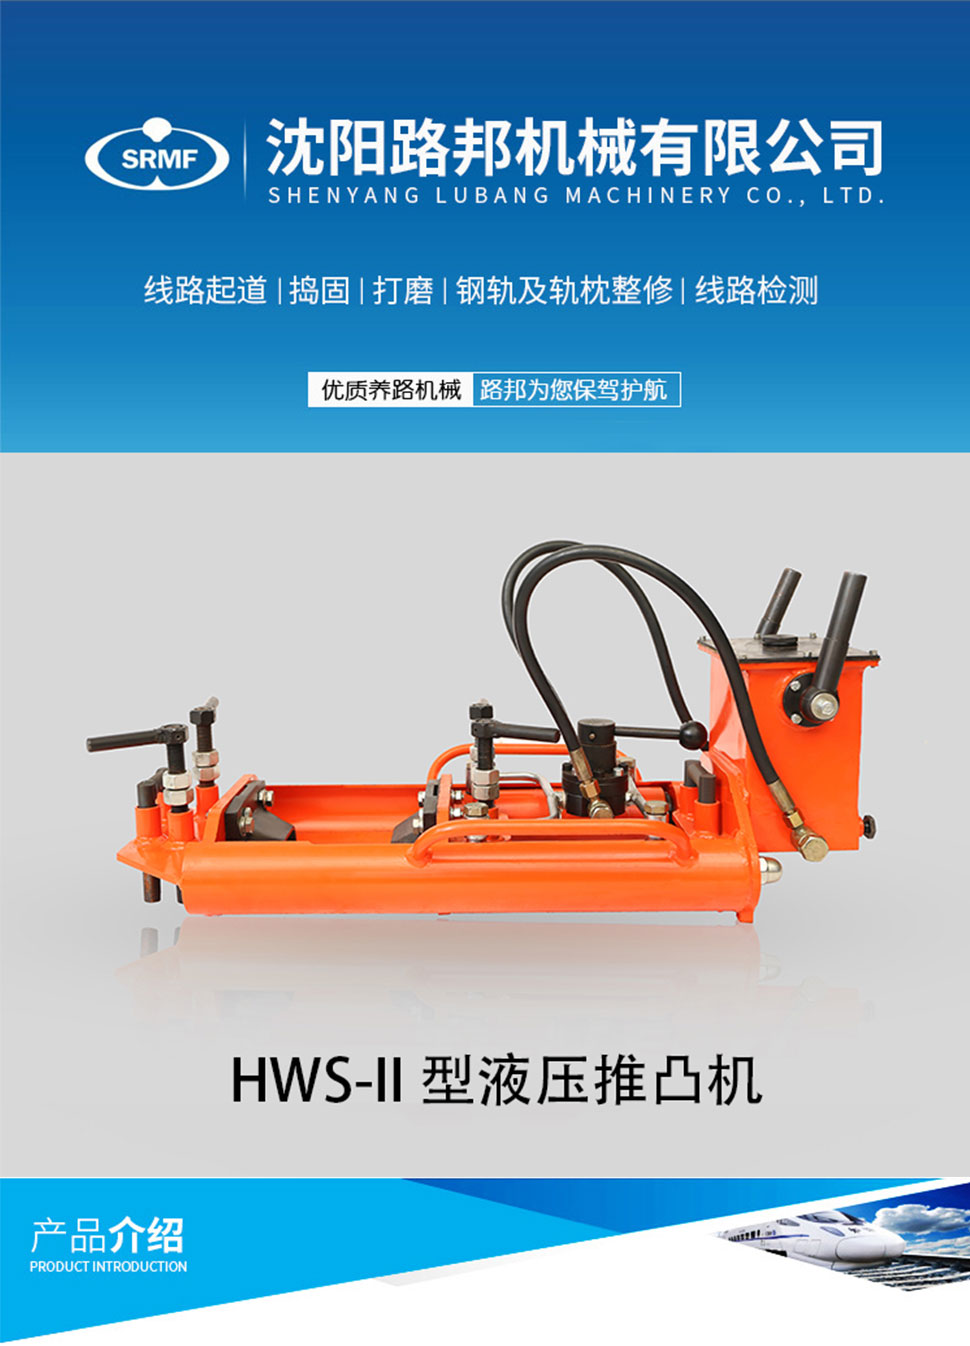 HWS-II型液压推凸机